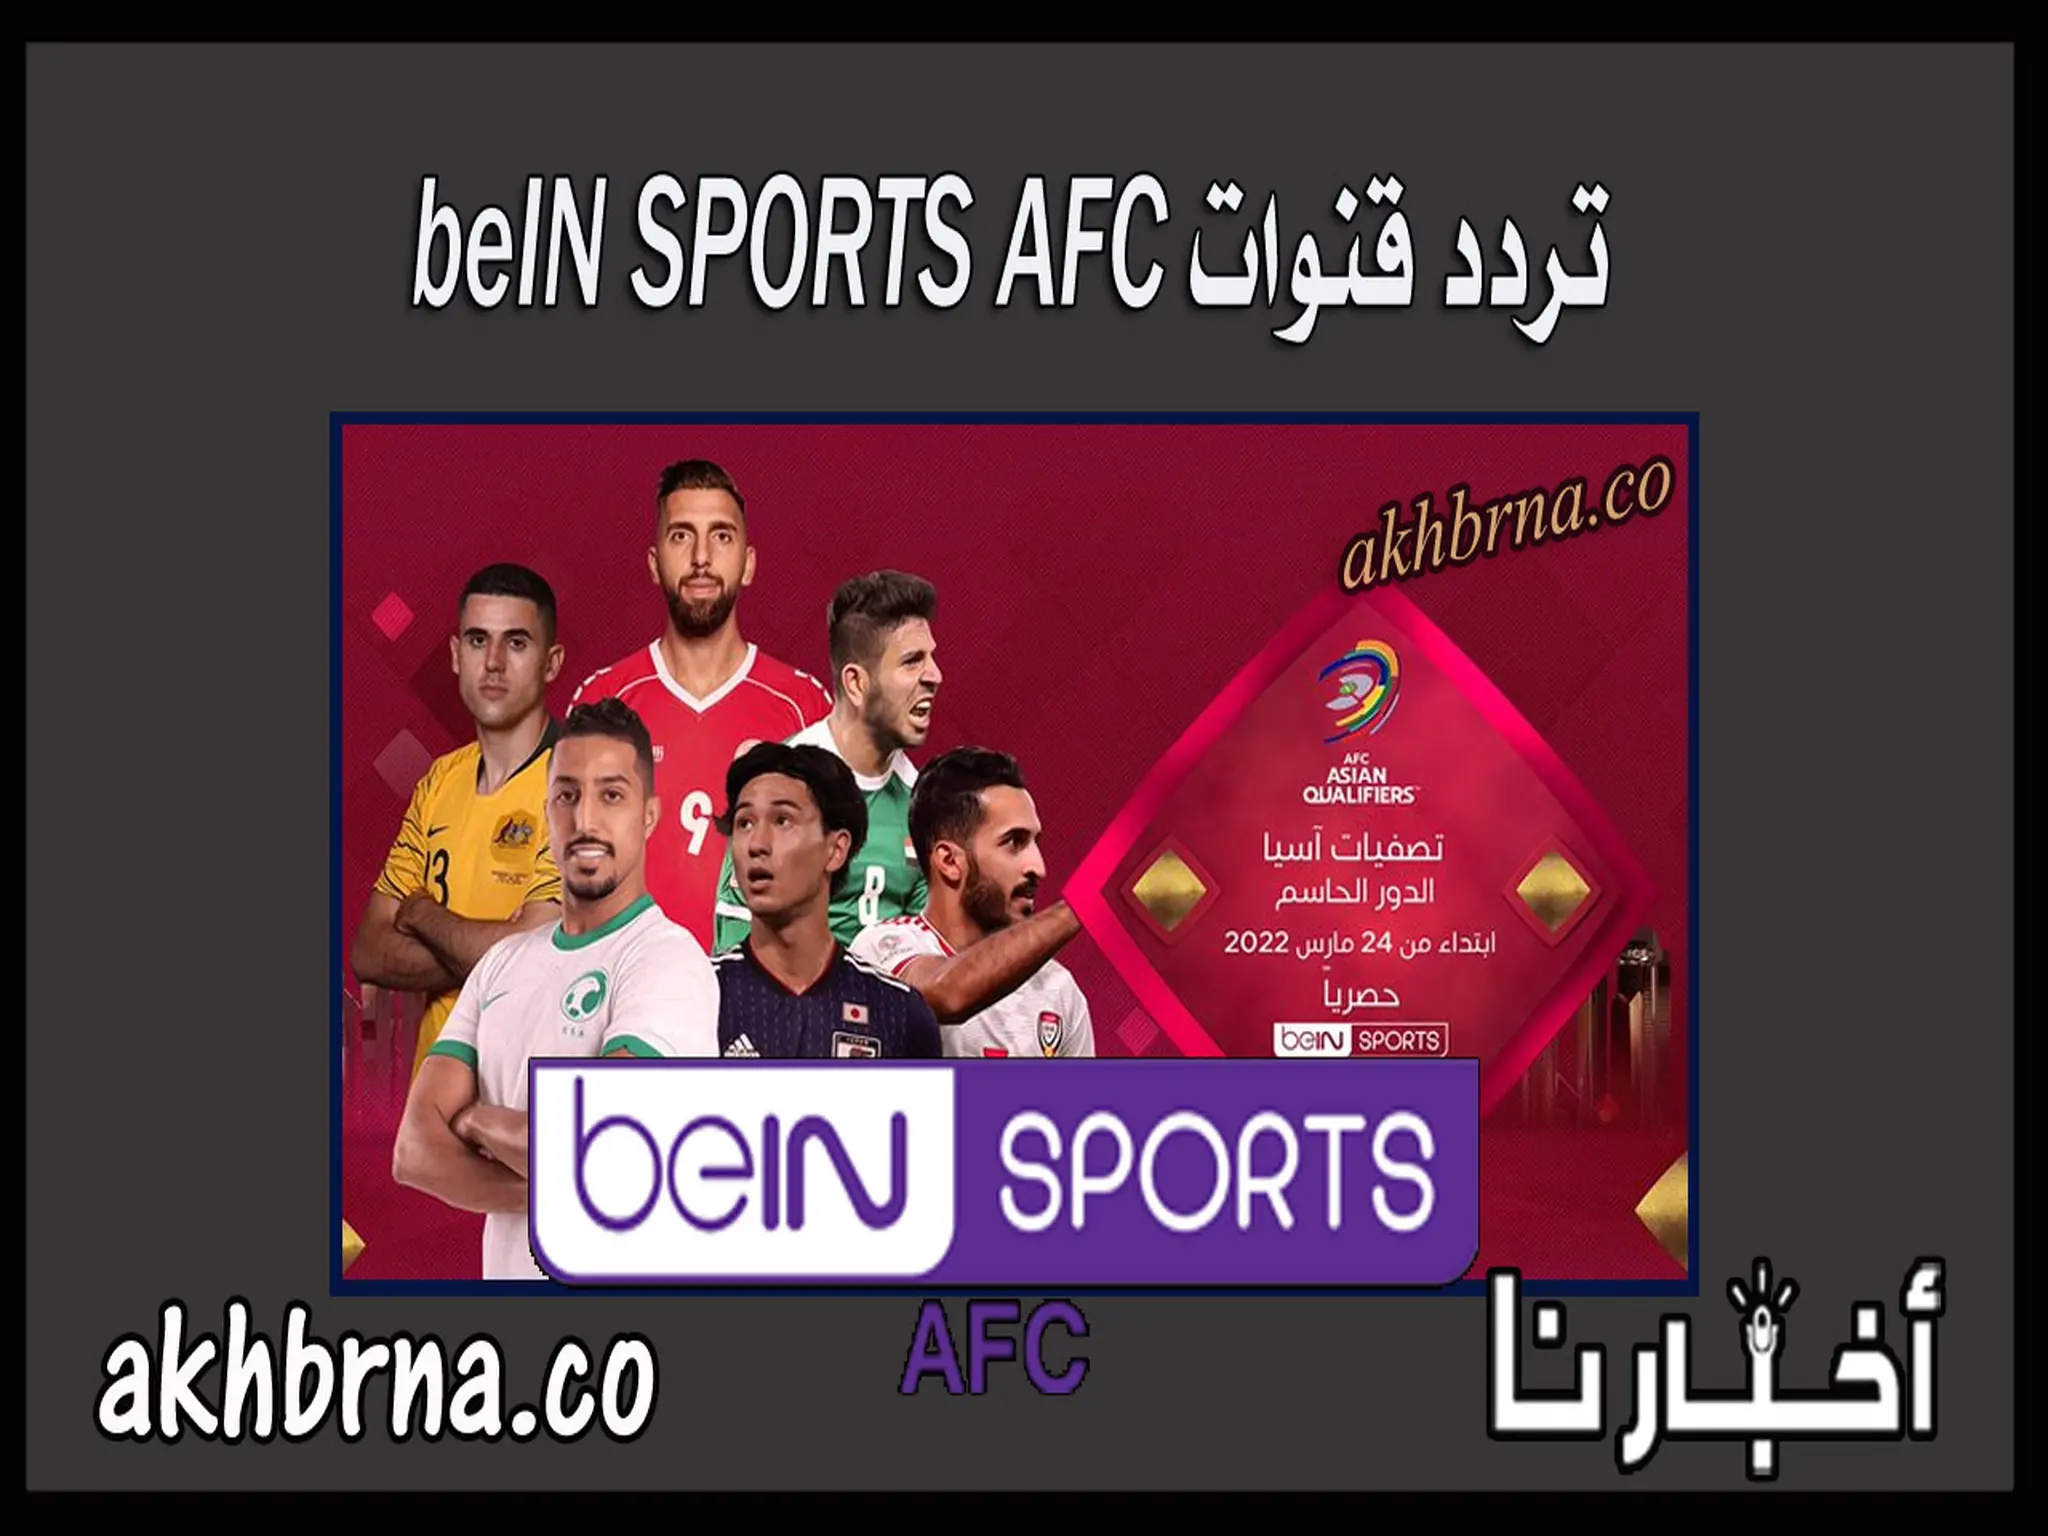 تردد قنوات beIN SPORTS AFC الجديدة الآسيوية الناقلة مباريات دوري ابطال آسيا 2022 اليوم